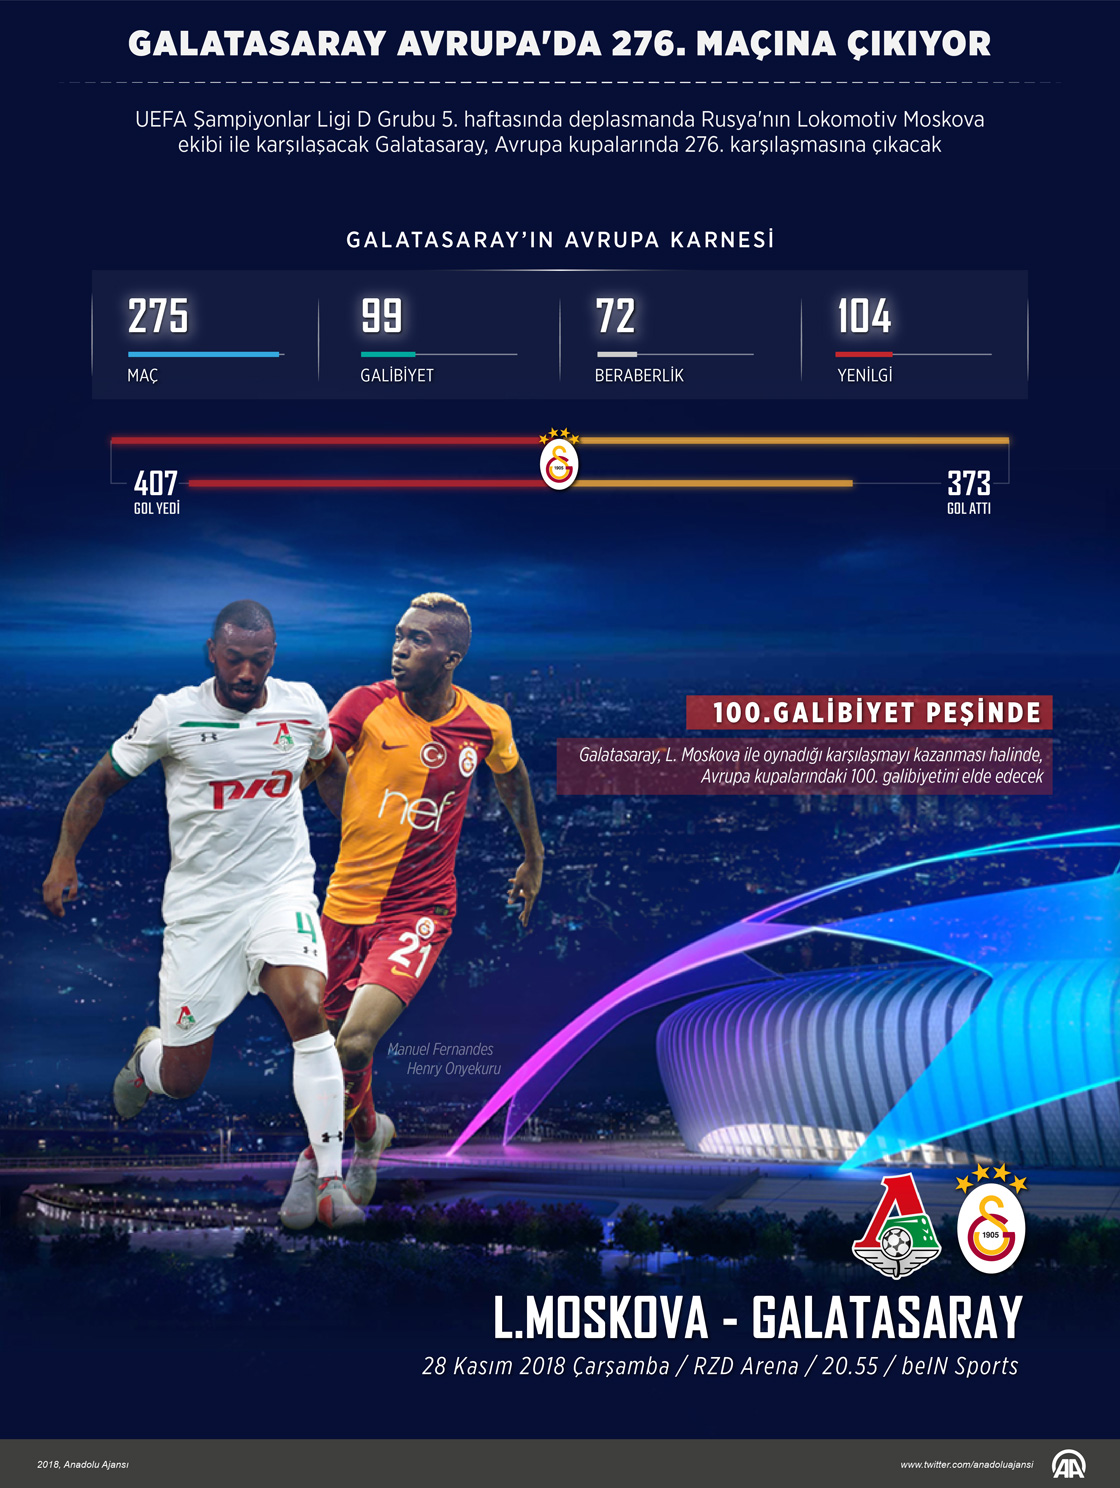  Galatasaray, Avrupa'da 276. maçına çıkıyor